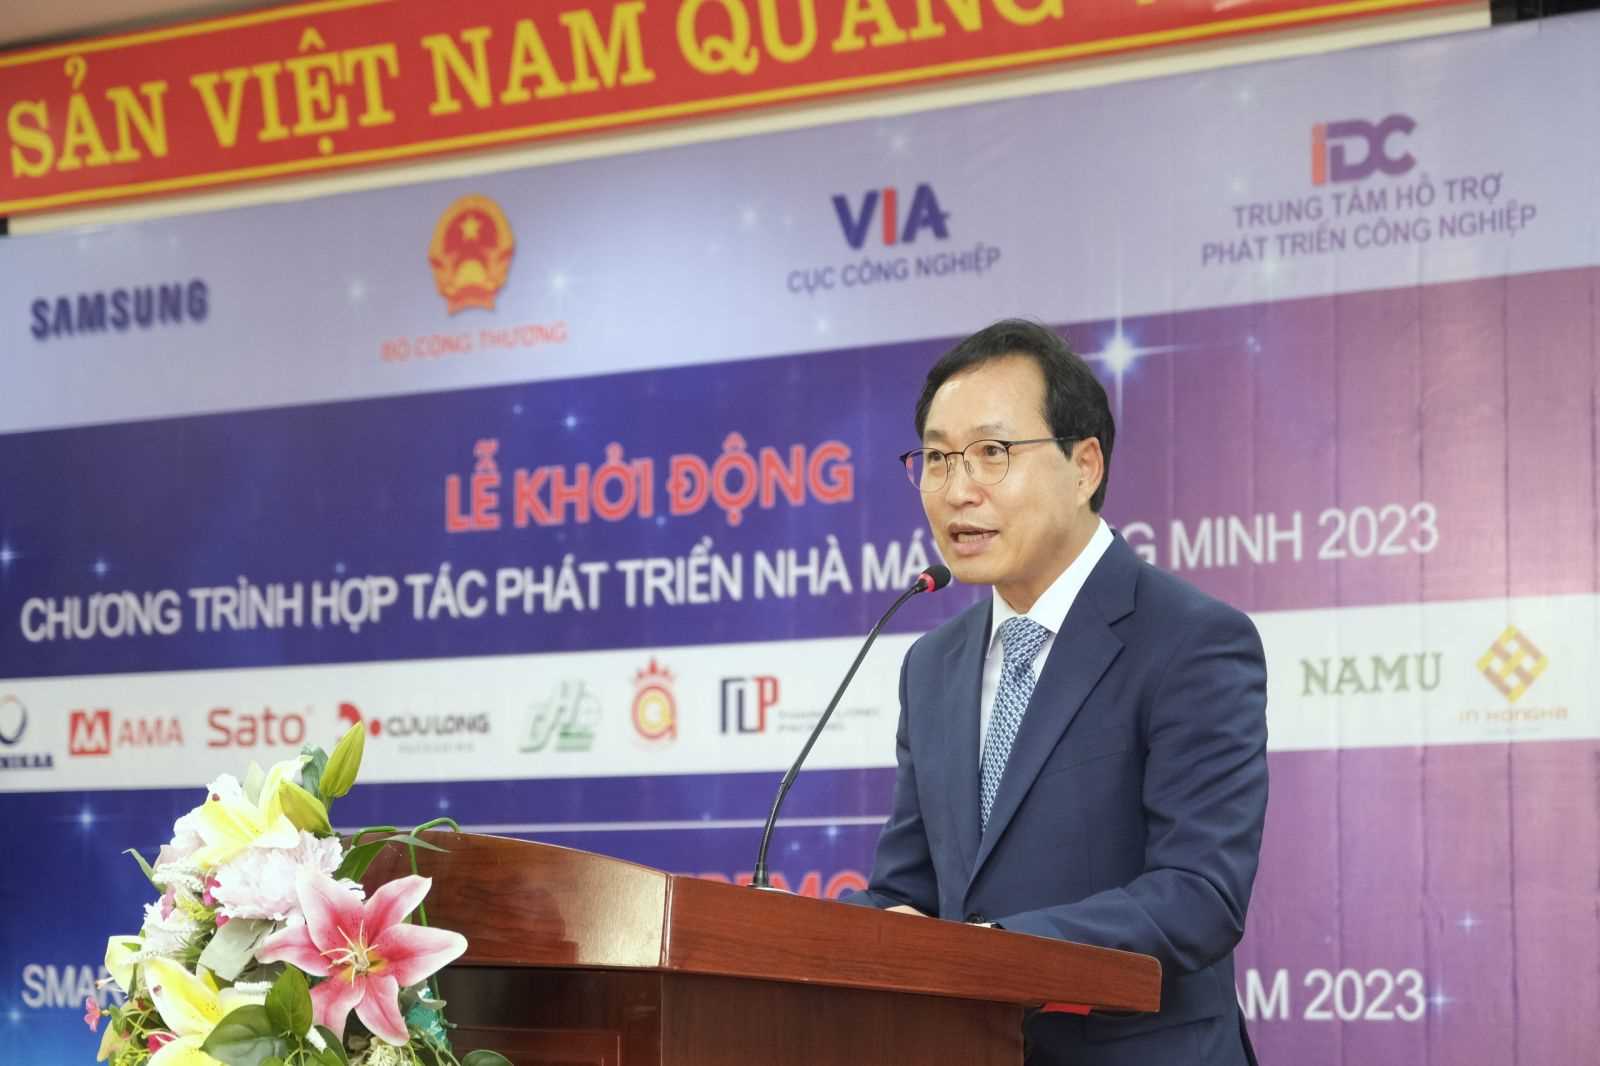 Choi Joo Ho – Tổng Giám đốc Tổ hợp Samsung Việt Nam tại Lễ khởi động Dự án Hợp tác phát triển nhà máy thông minh đợt 1 năm 2023.